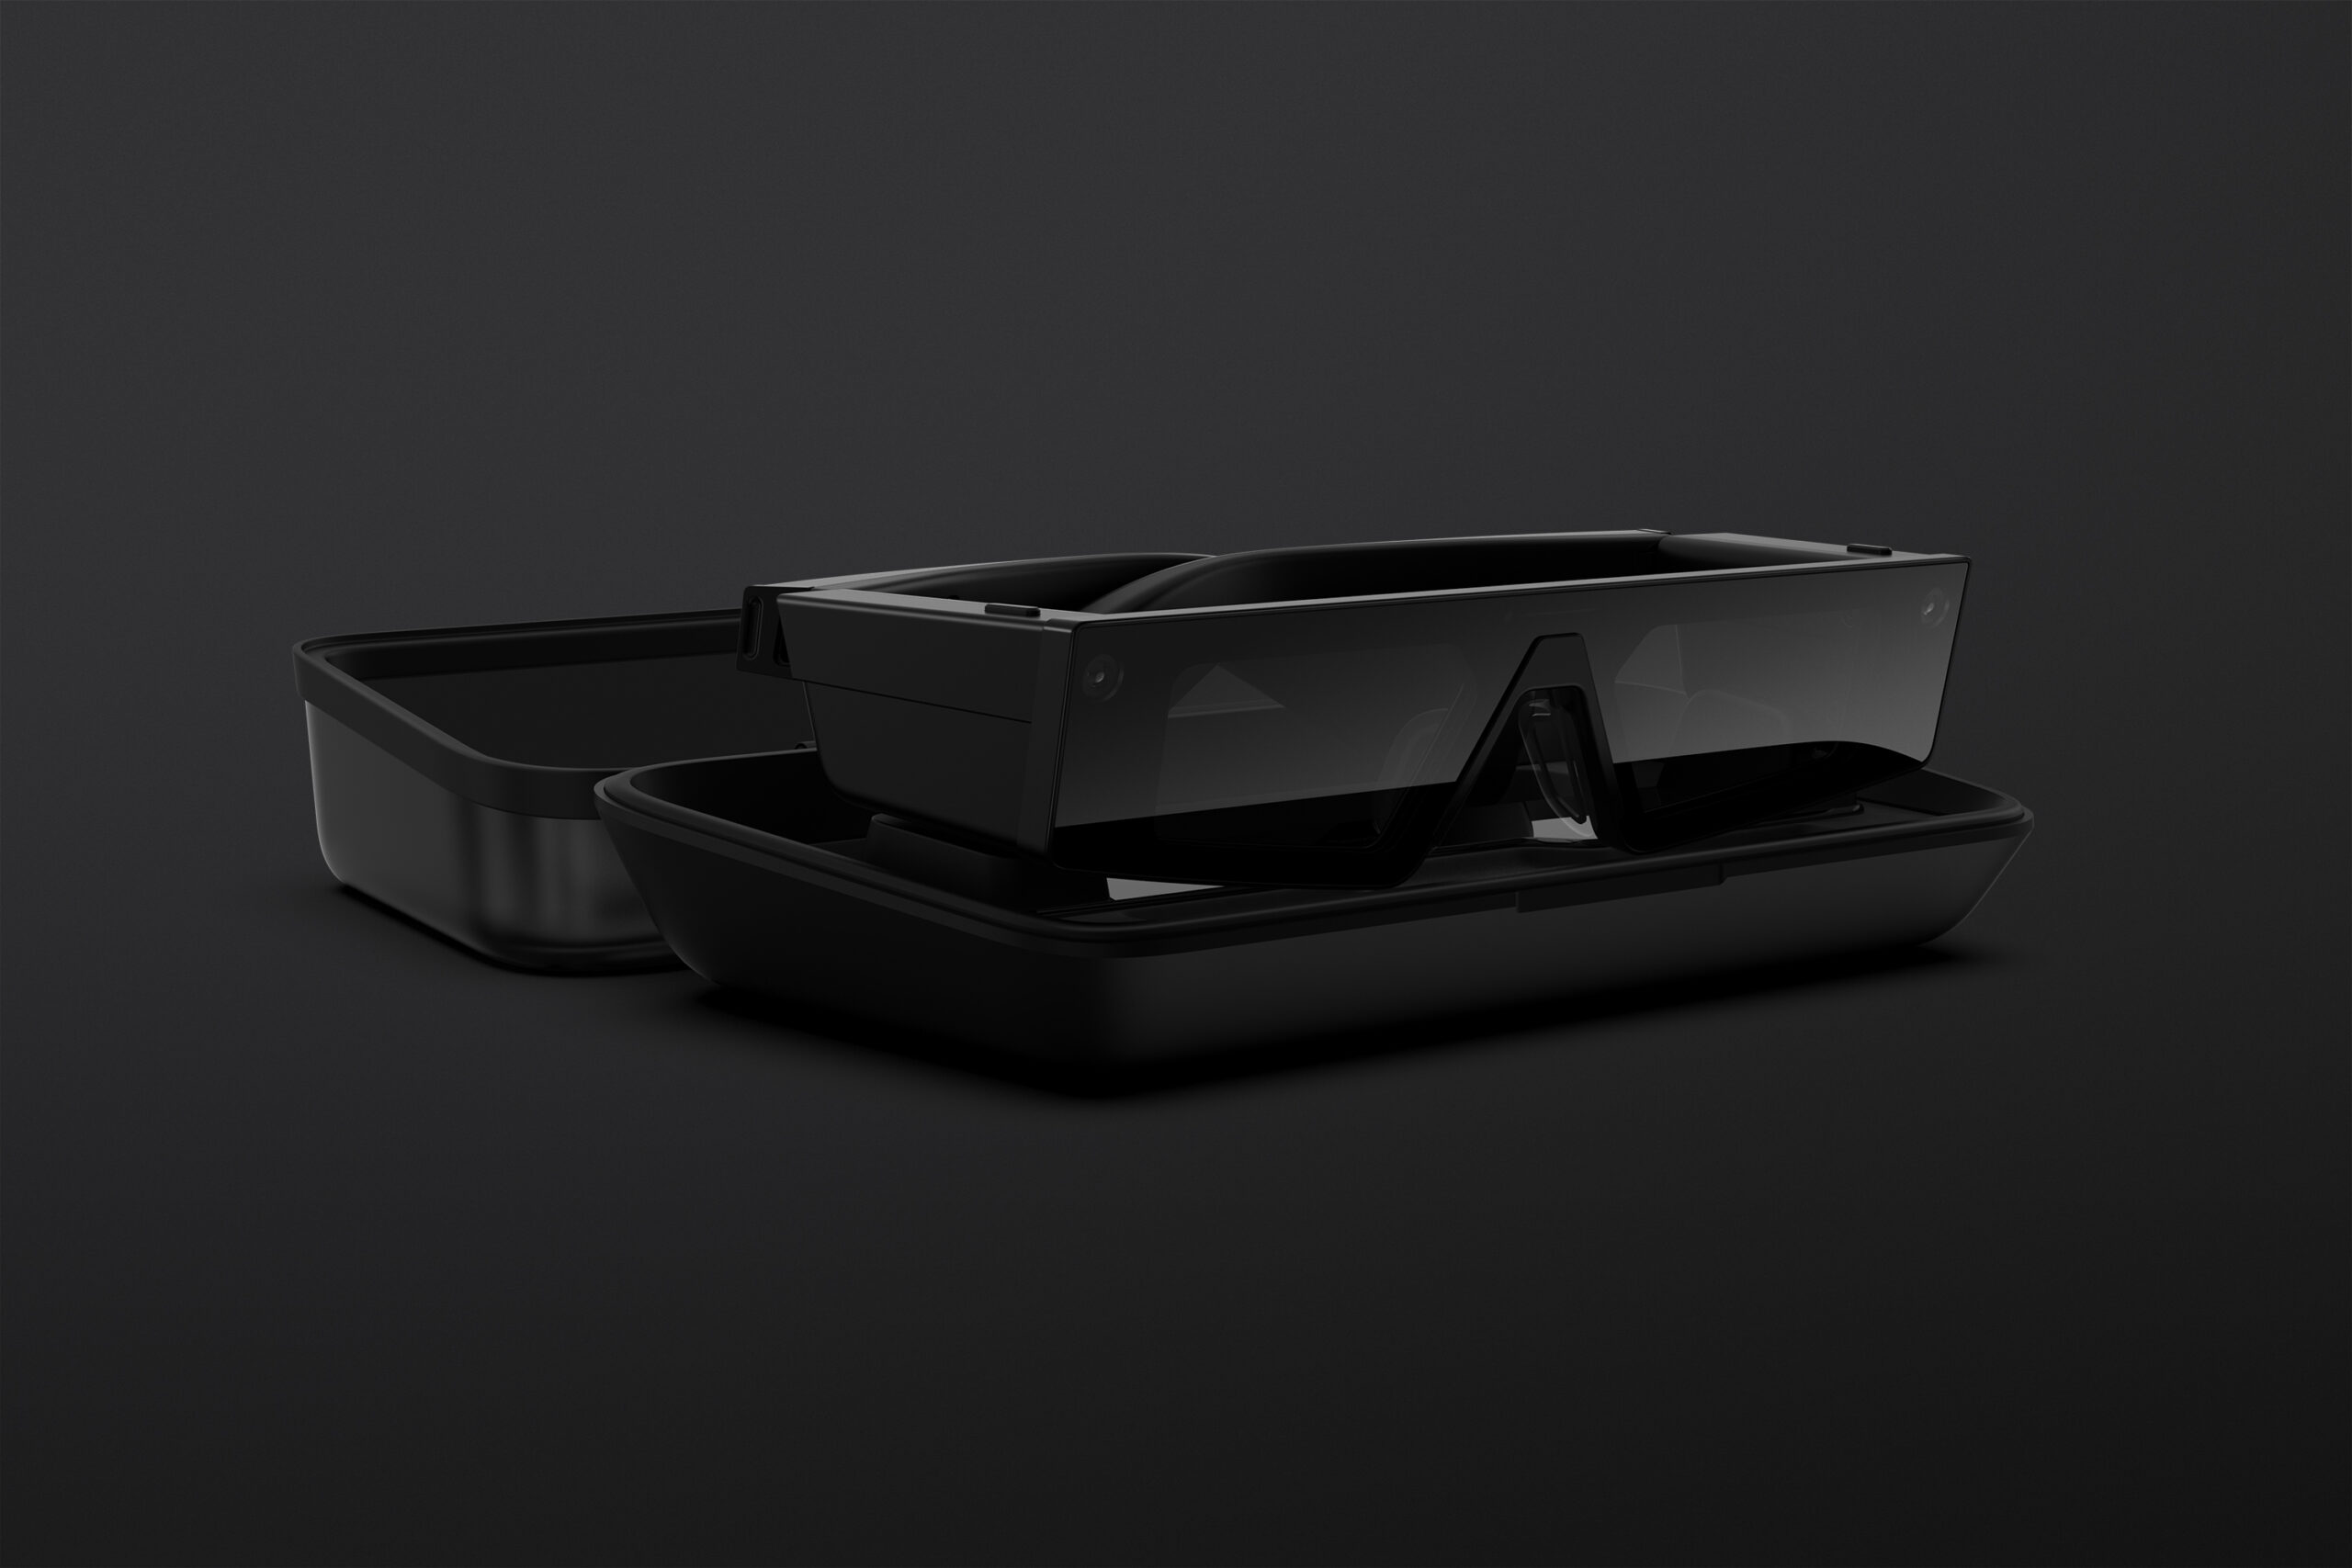 novos-oculos-do-snap-permitem-que-voce-veja-o-mundo-em-realidade-aumentada